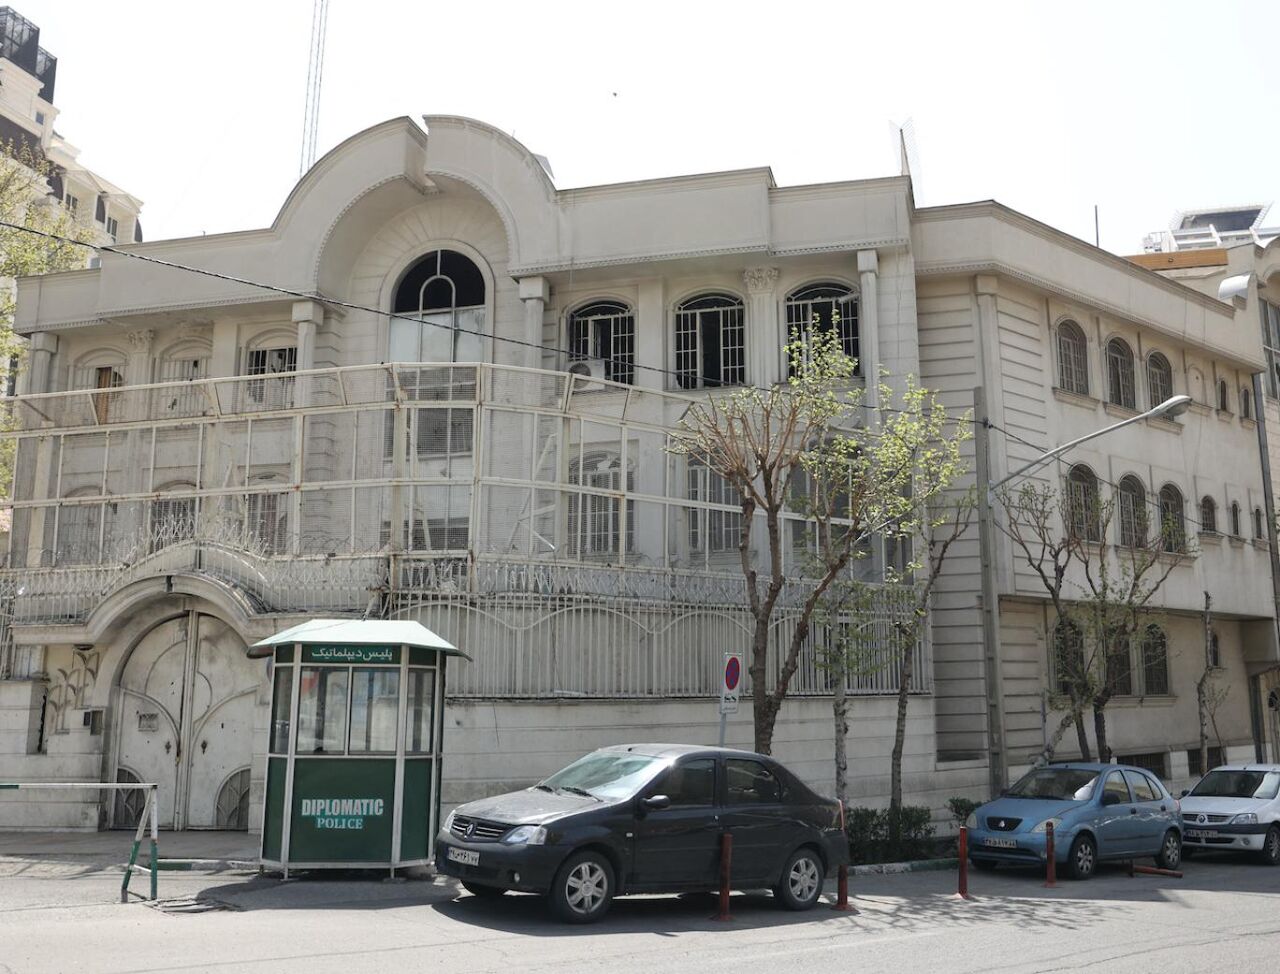 Посольство Саудовской Аравии возобновило свою работу в Иране